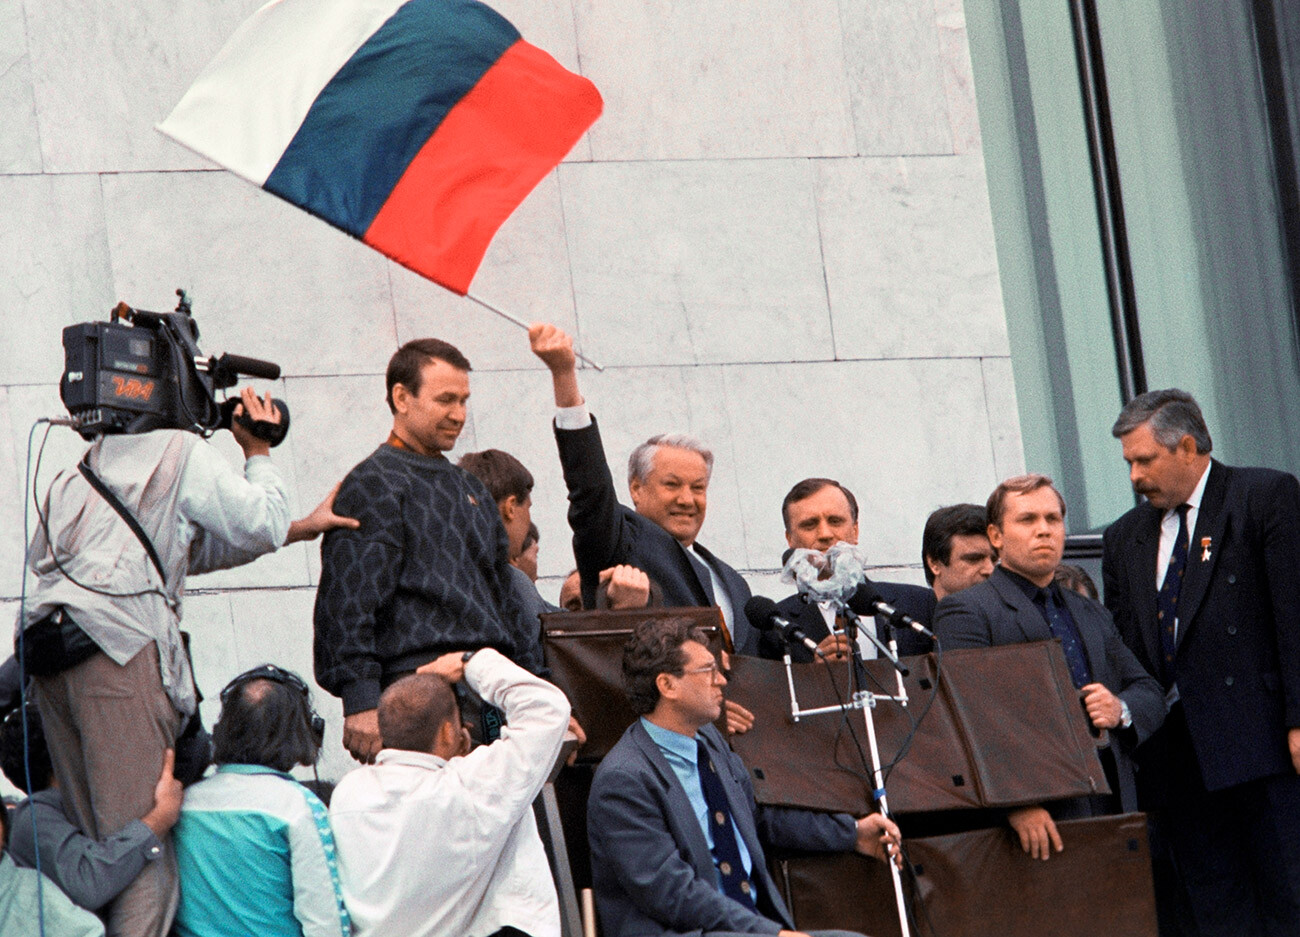 Une manifestation près de la Maison Blanche de Moscou en août 1991. Boris Eltsine avec le drapeau russe.